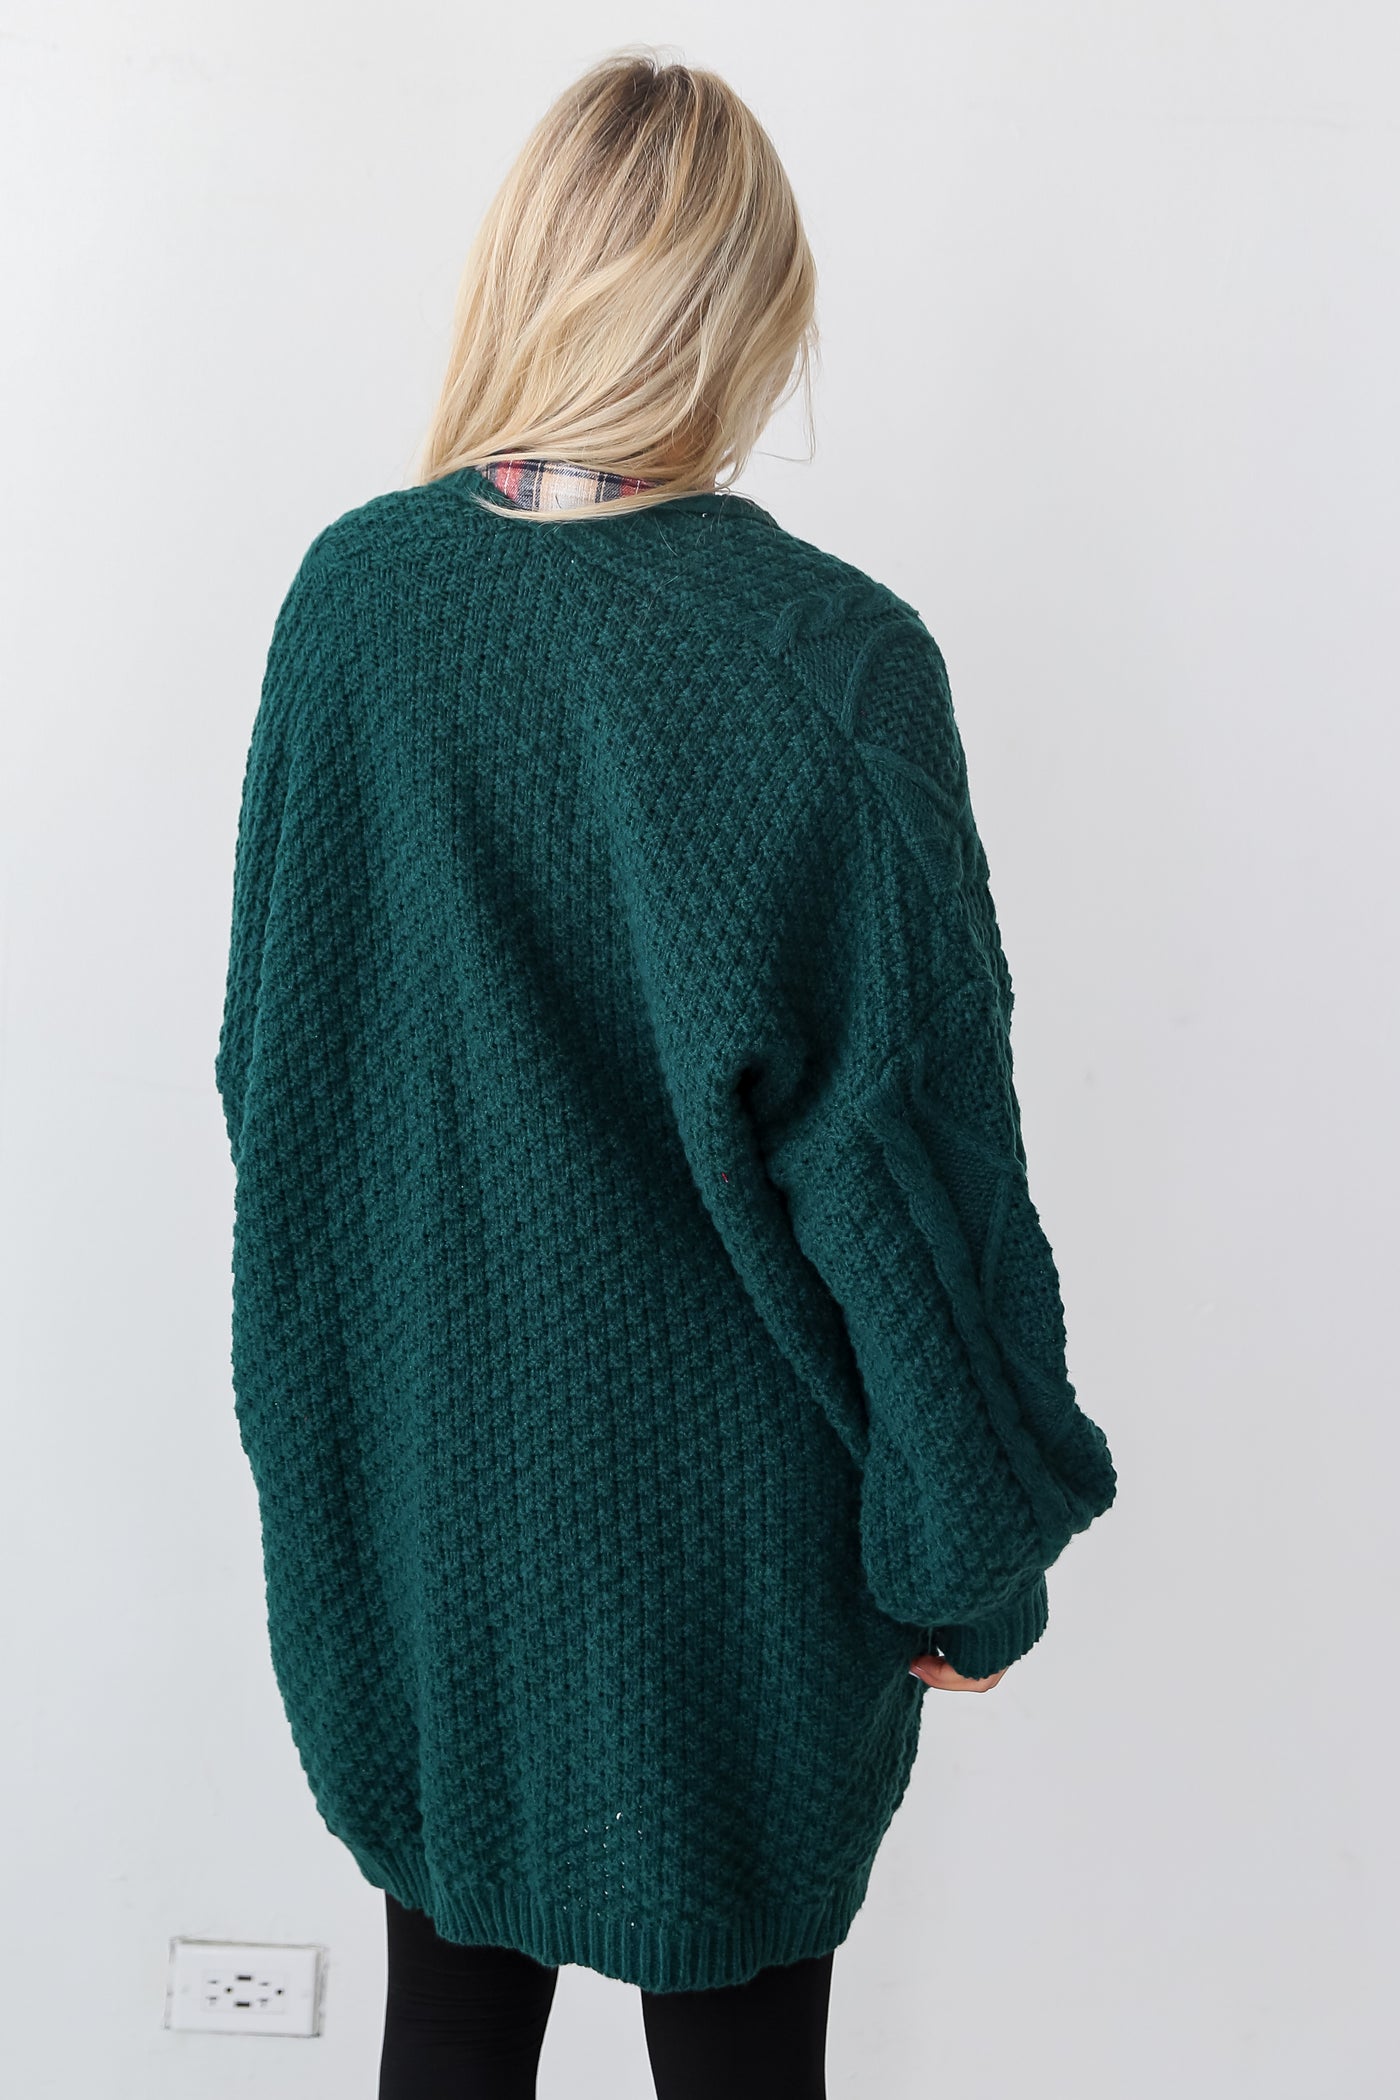 green sweaters